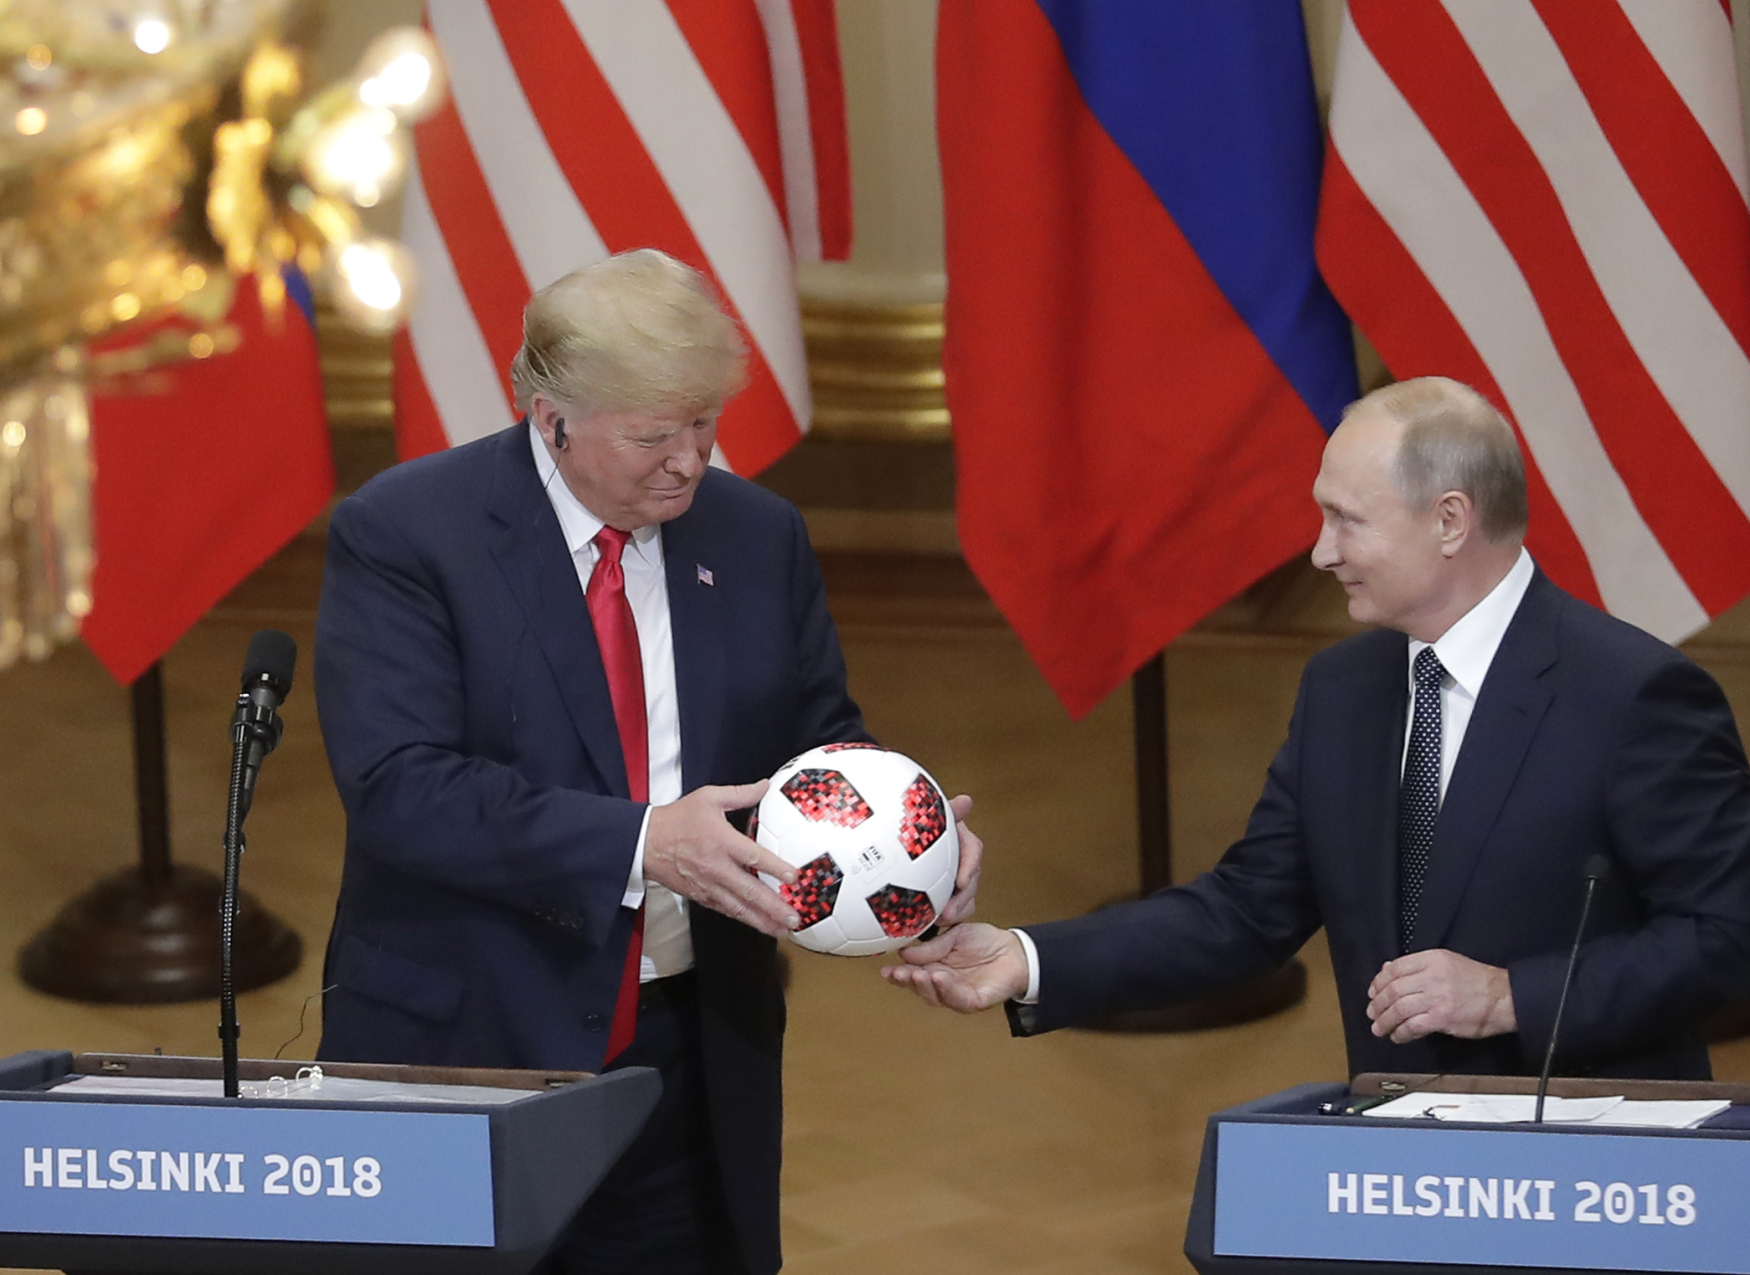 Donald Trump dostal od Vladimira Putina míč z mistrovství světa ve fotbale